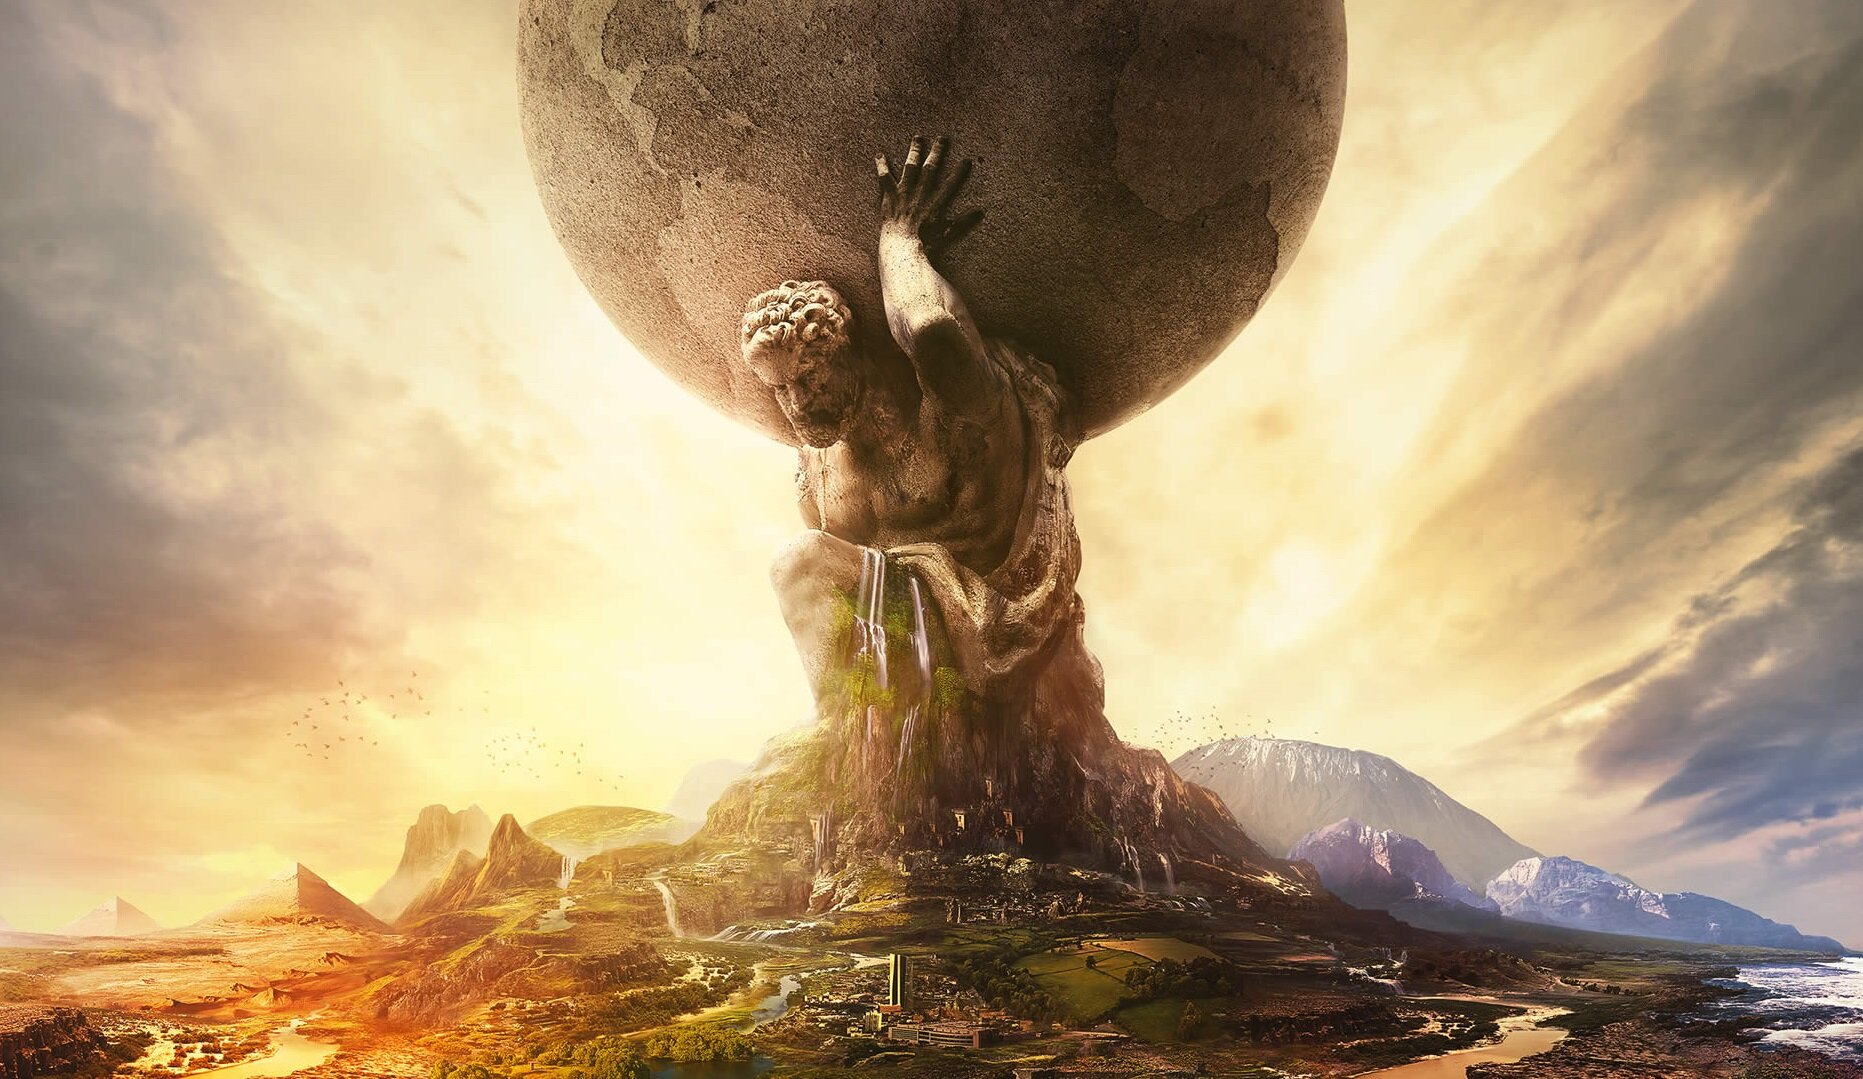 Δωρεάν το Civilization VI στο Epic Games Store